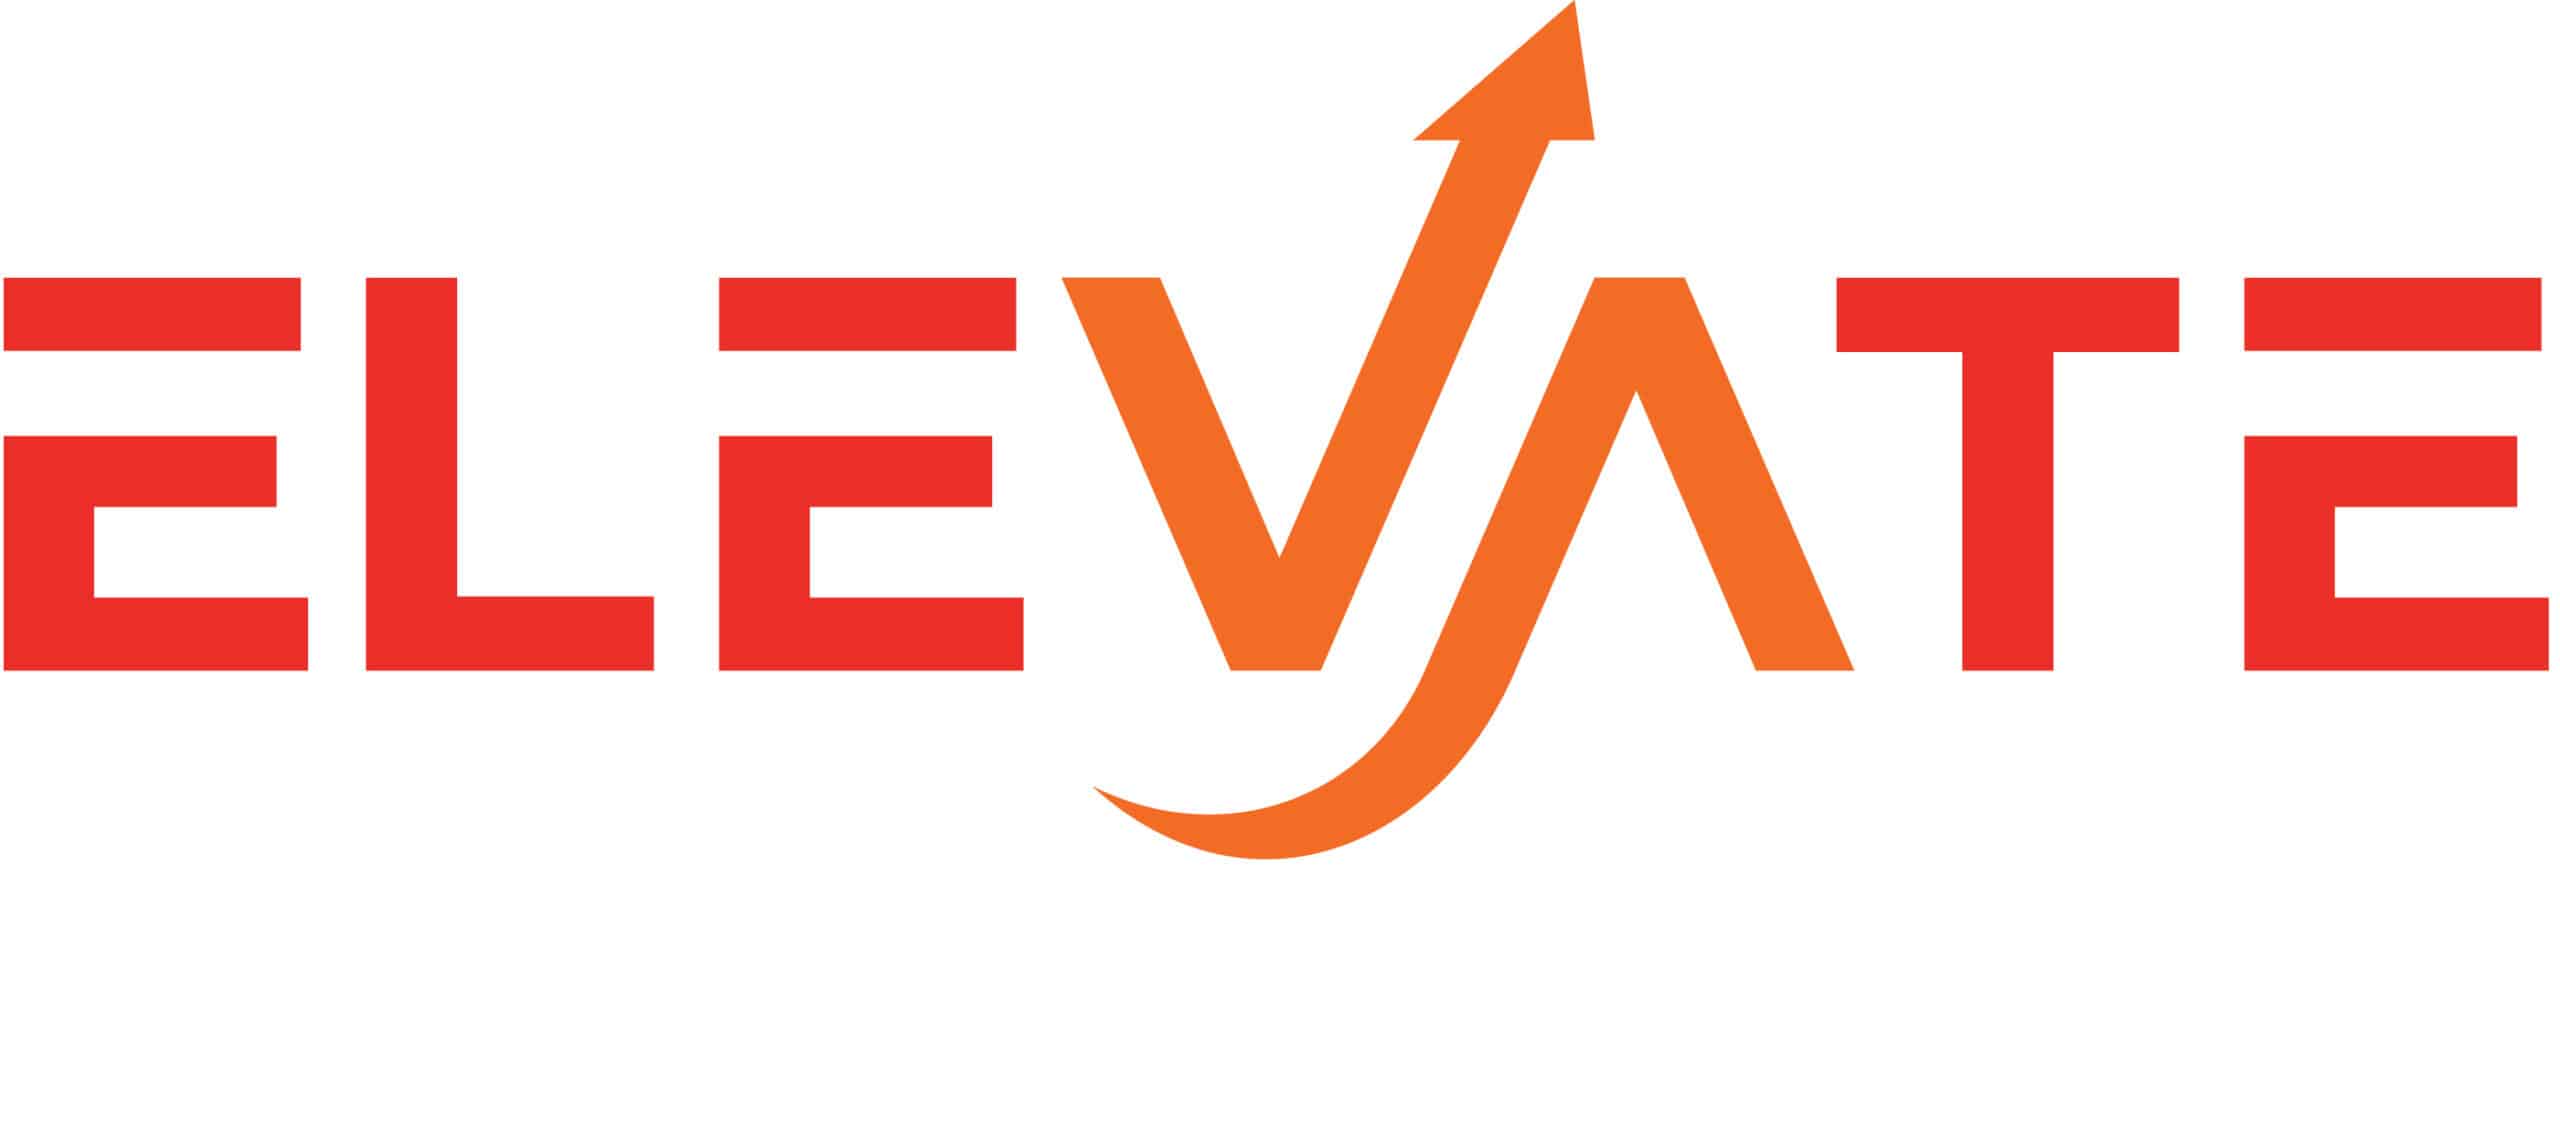 Elevate Logo - OilSafe Lubrication Management